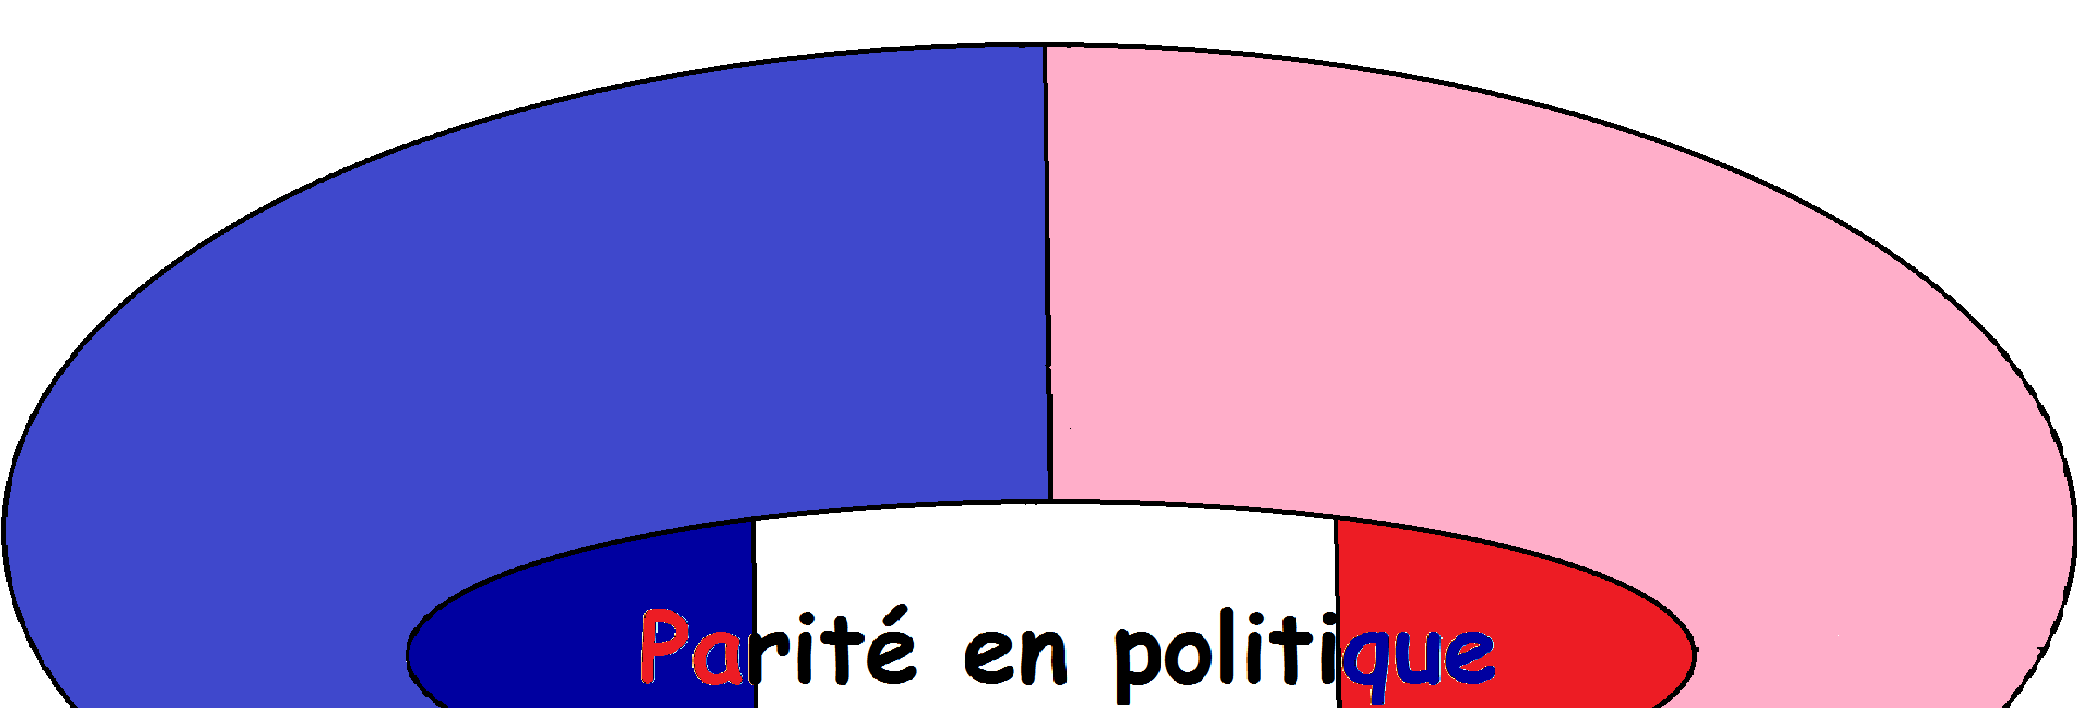 La Loi Du 6 Juin 2000 L Influence De La Femme Politique Française 